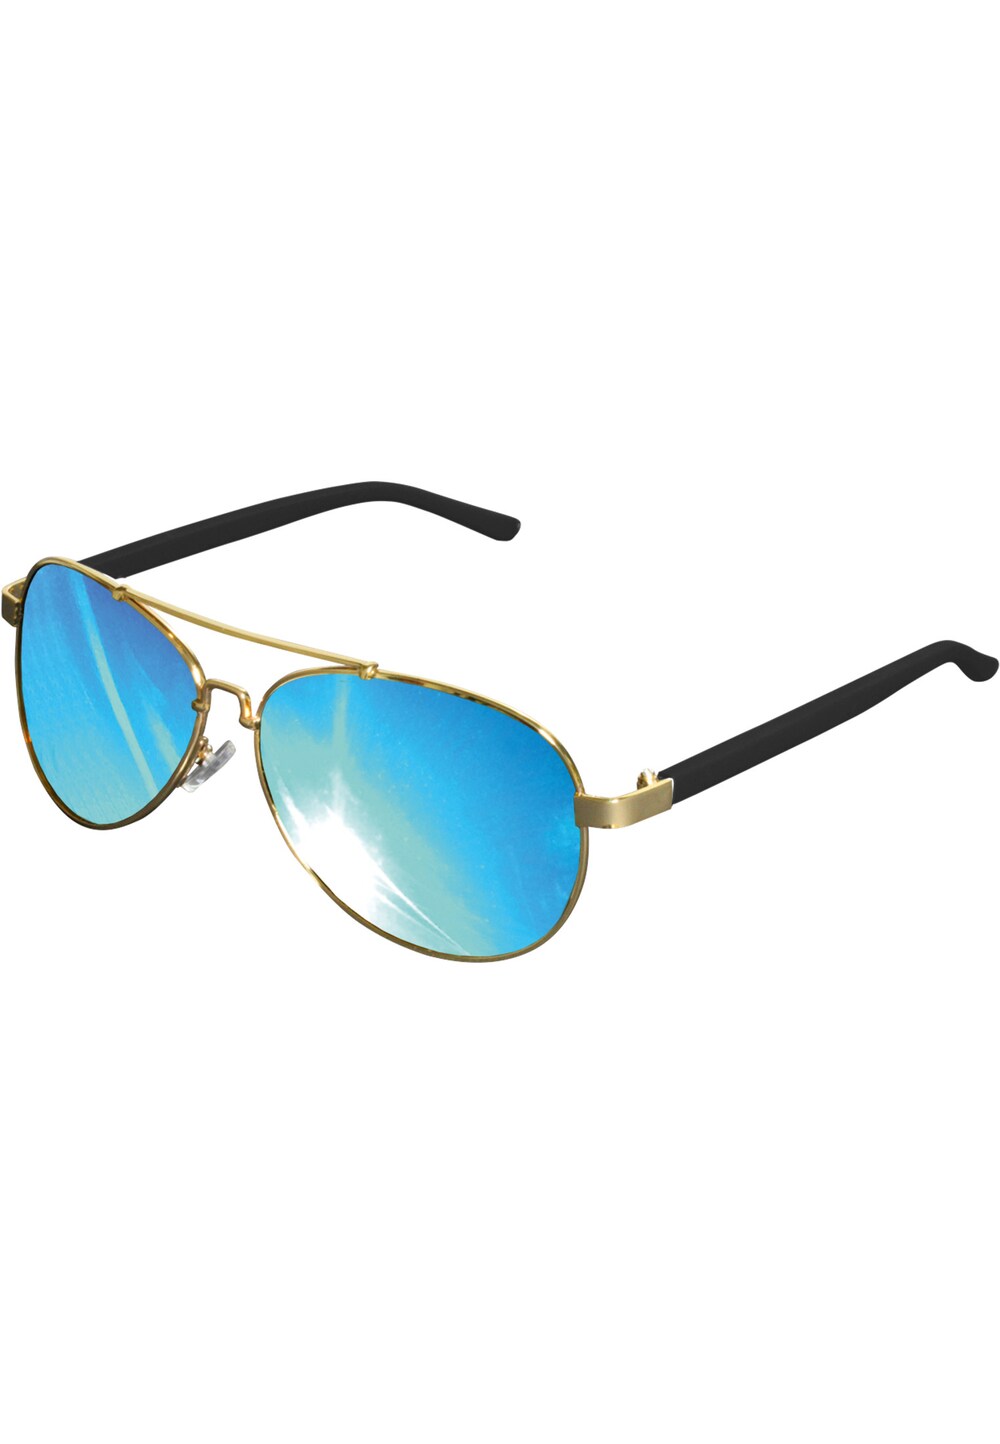 Солнечные очки MSTRDS Mumbo, золото цена и фото